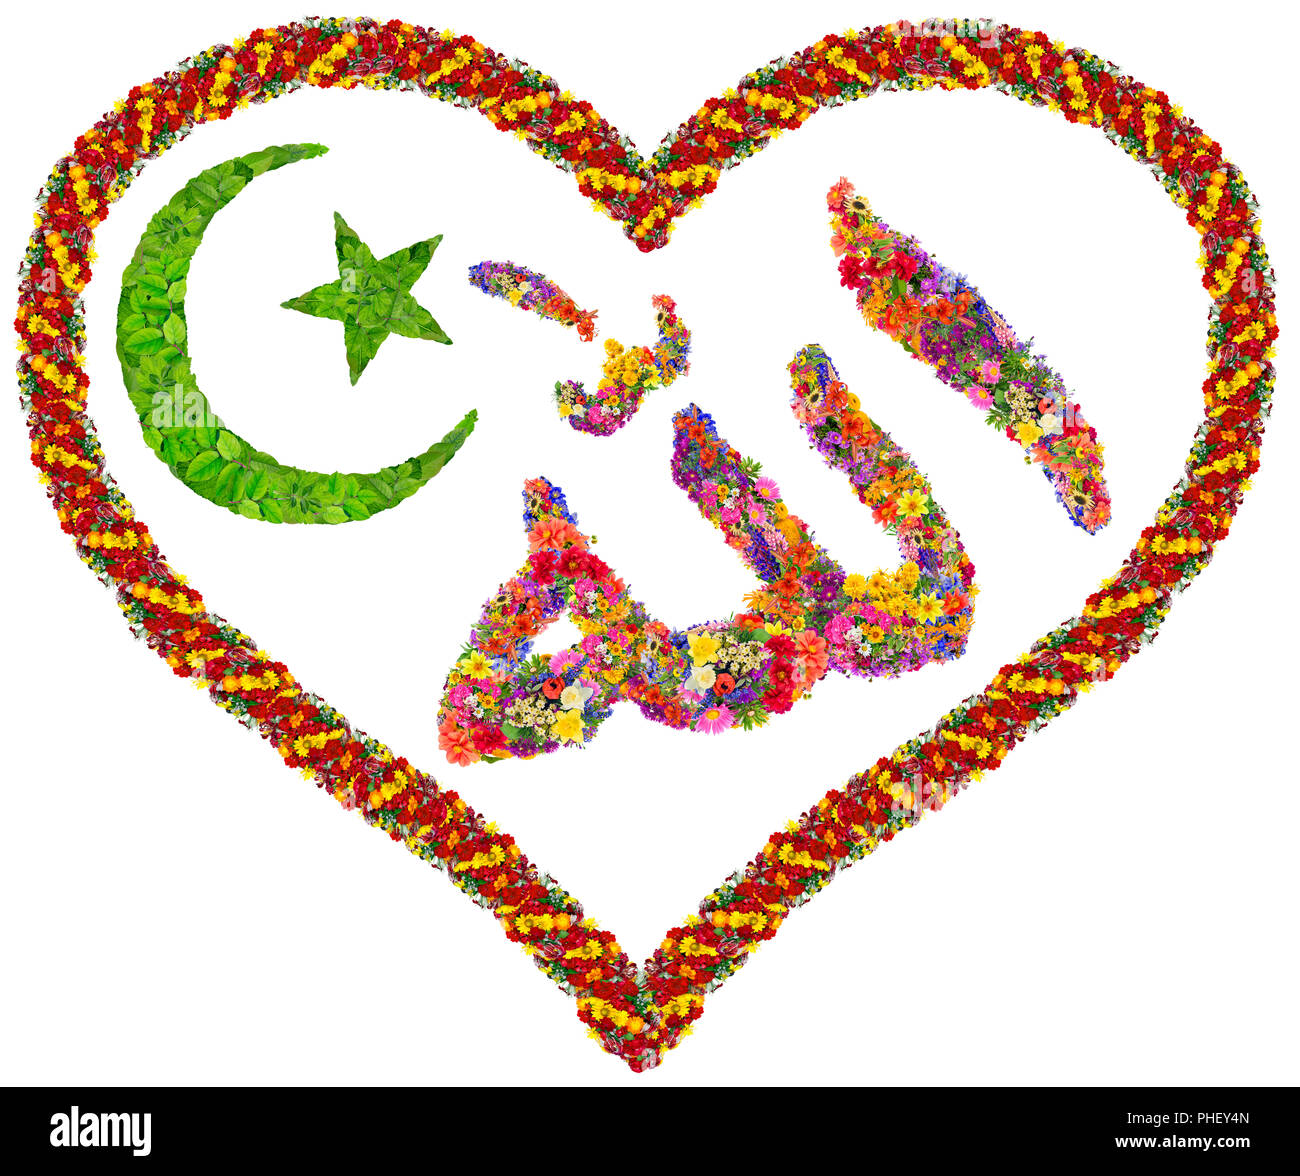 Love to Allah concept Stock Photo